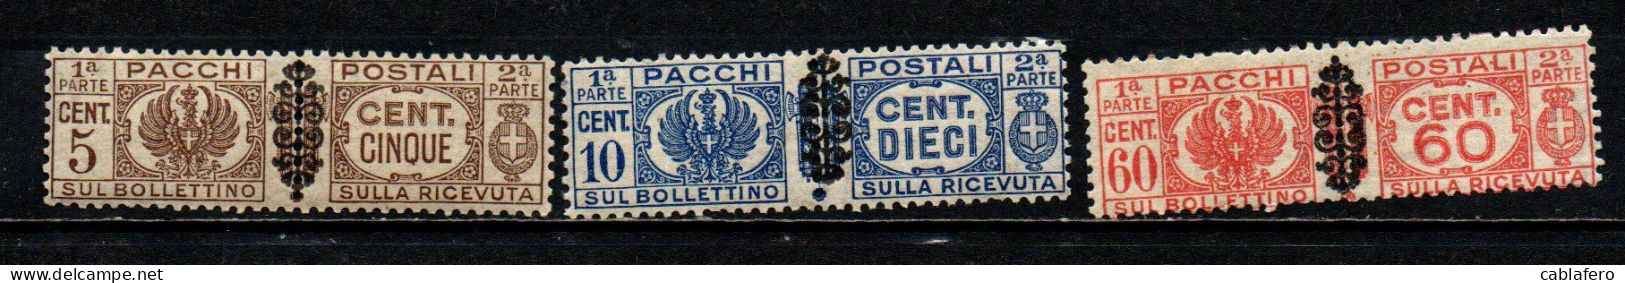 ITALIA LUOGOTENENZA - 1945 - STEMMA E CIFRA CON FREGIO NERO SUI FASCI - 5-10 E 60 Cent. - MNH - Paketmarken